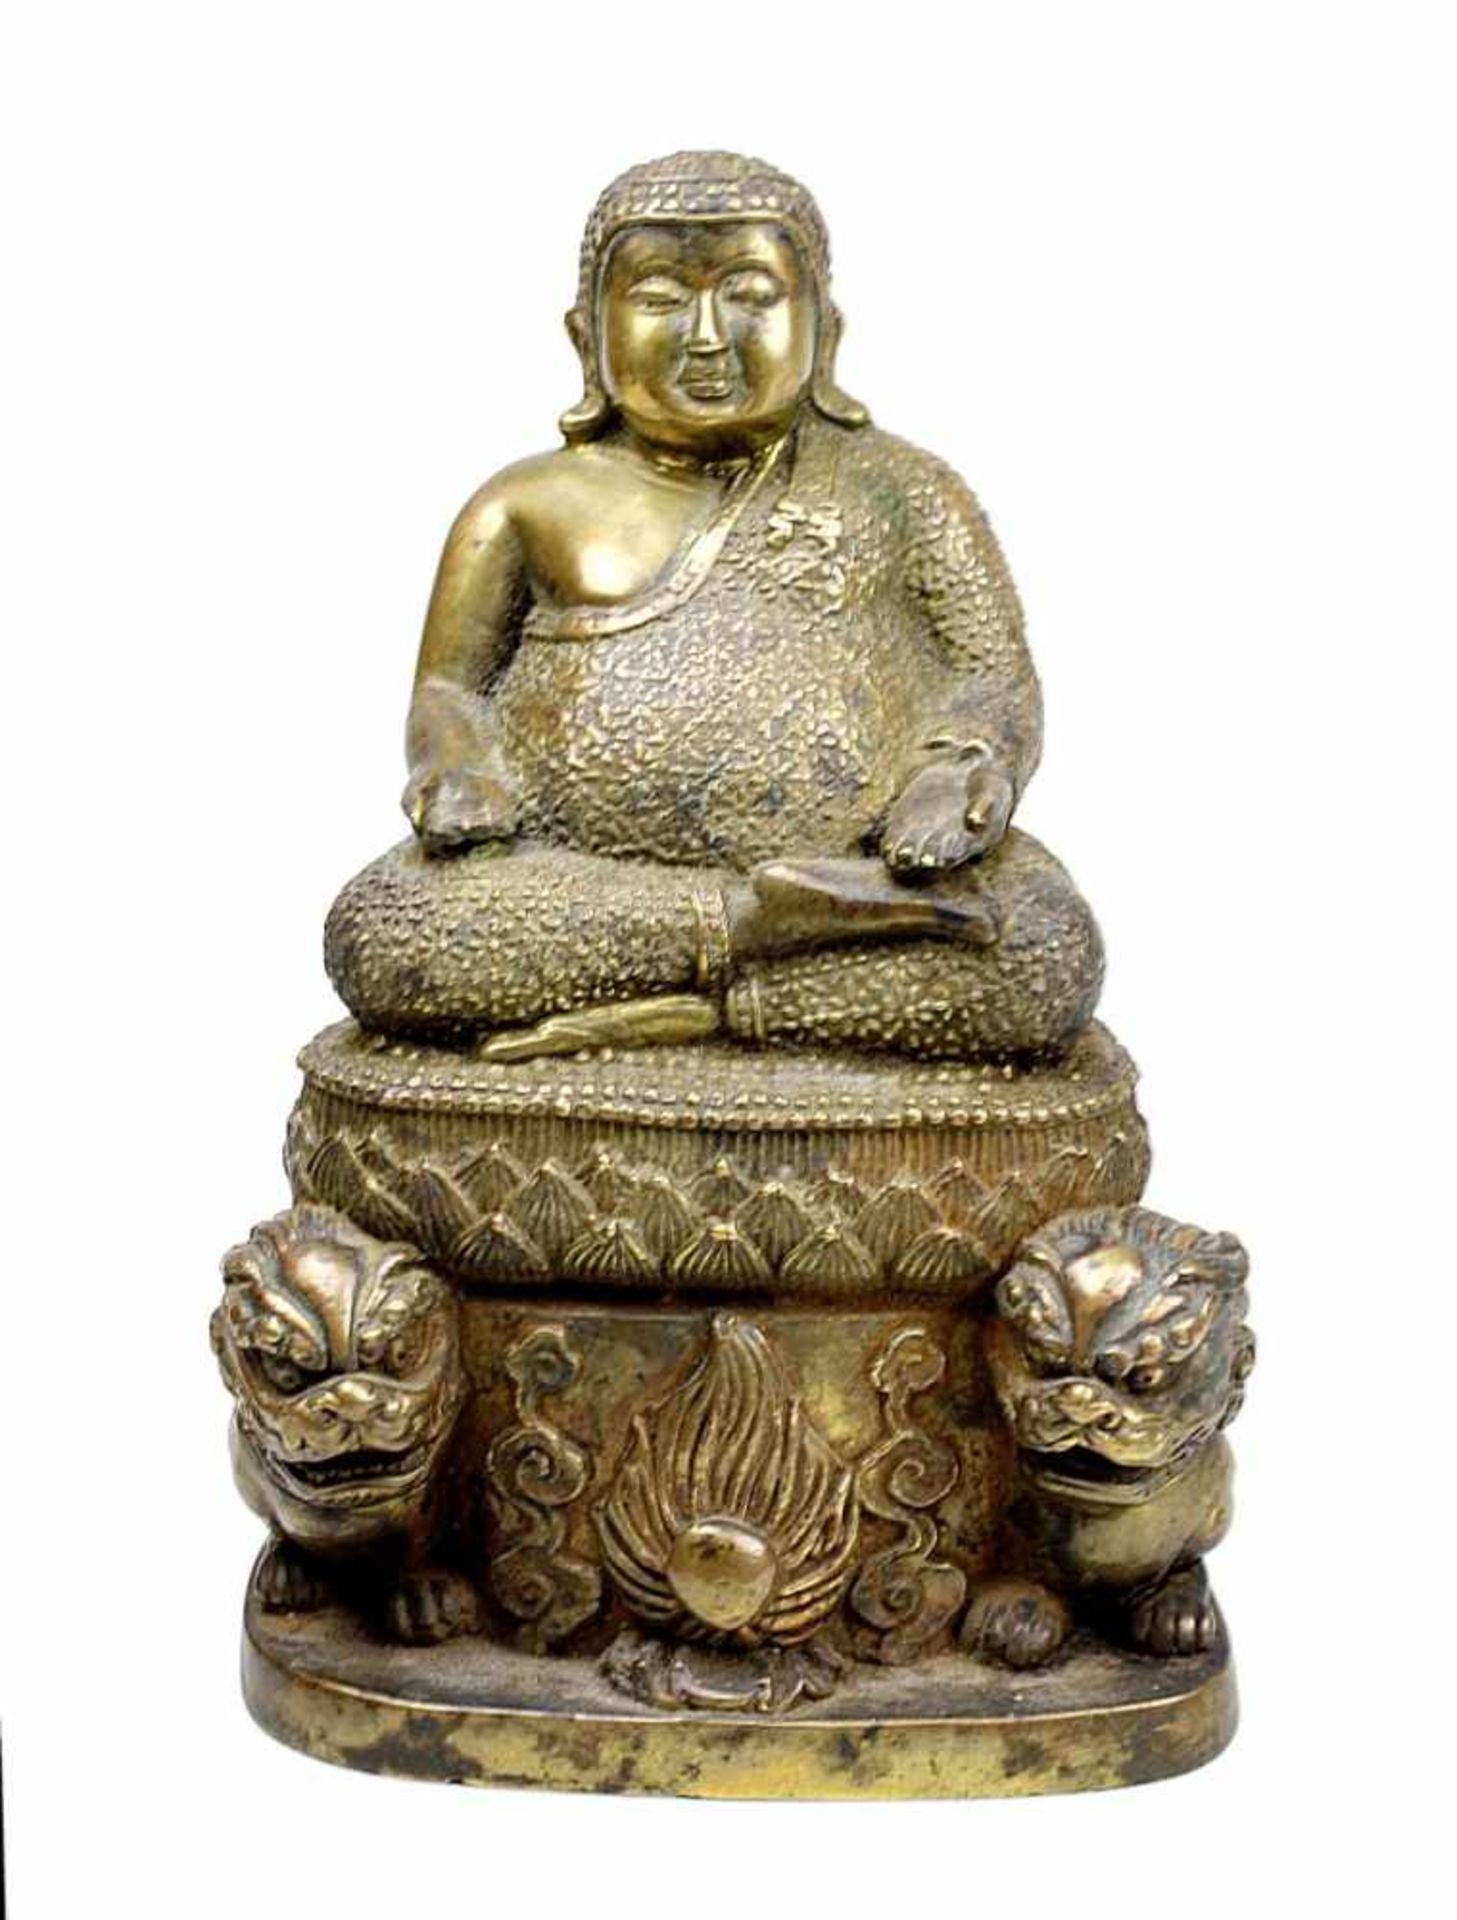 Chinesischer Bronzebuddha, 19. Jh., beleibter Buddha in meditierender Haltung auf Lotusthron, am